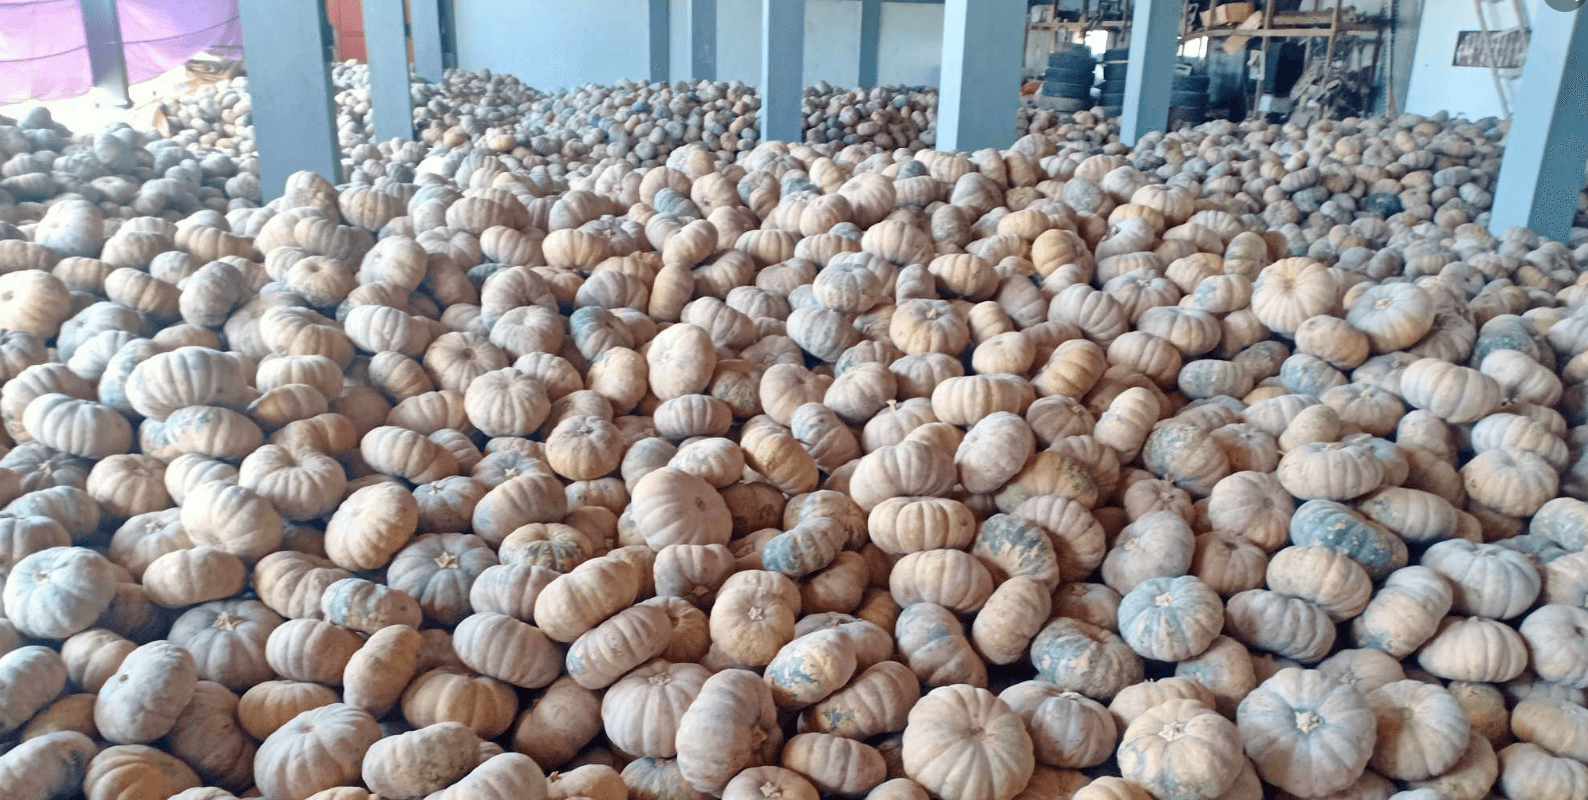 Kalabasa ng pagasa! Buy 20 kilos of pumpkins for P299 from Nueva Ecija farmers